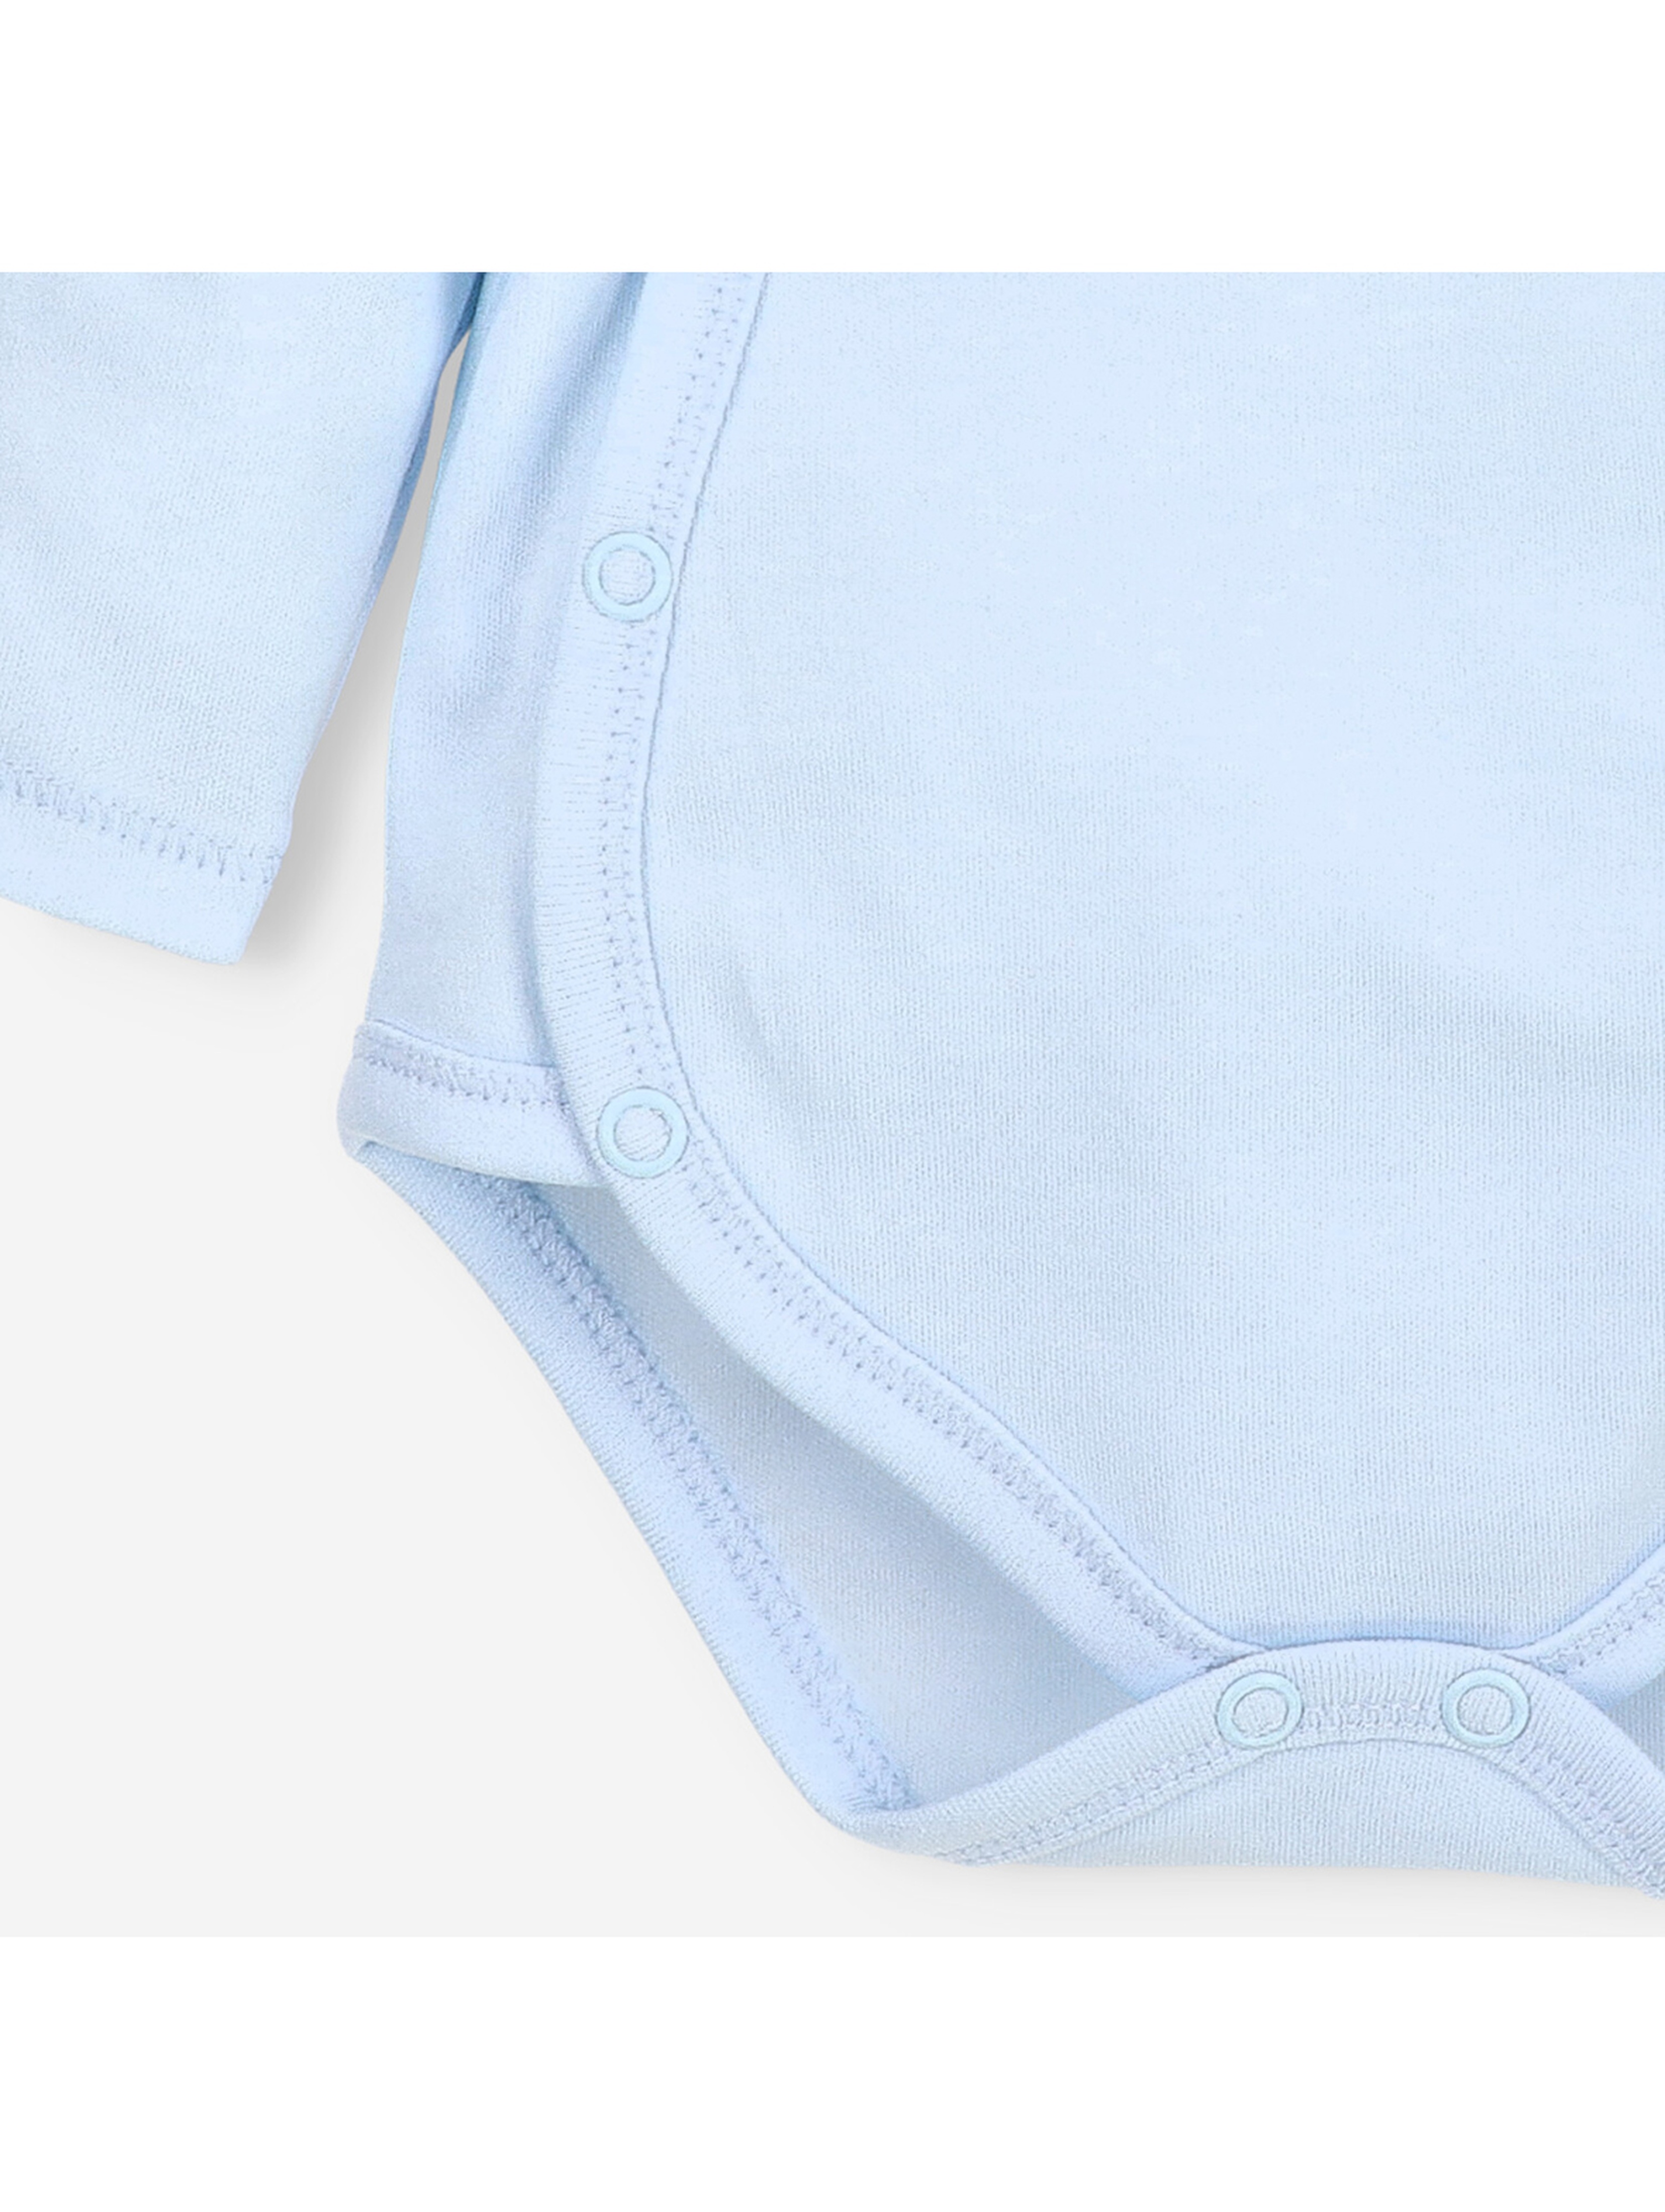 Body niemowlęce z bawełny organicznej - długi rękaw - niebieskie